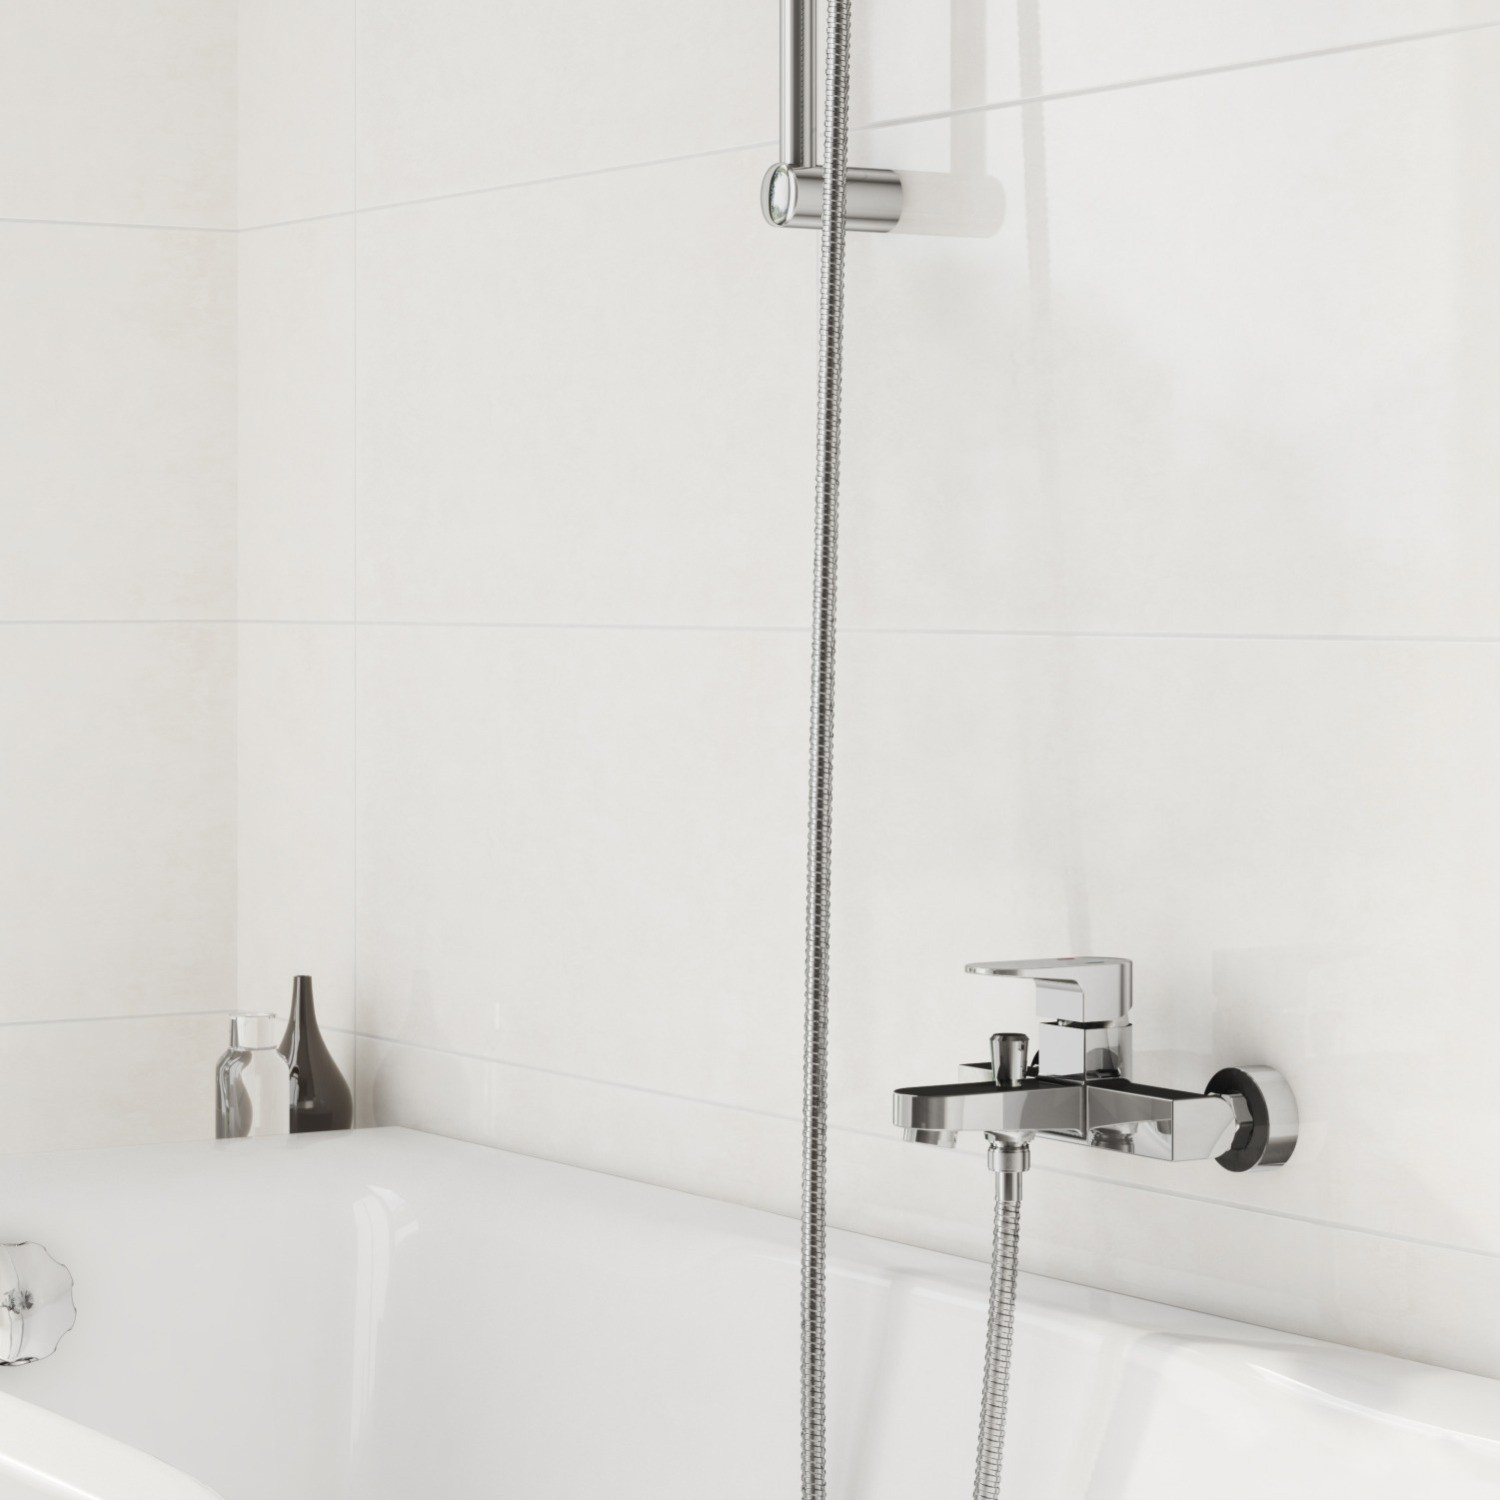 Змішувач для ванни і душу Cersanit Vigo S951-010 ціна 2970 грн - фотографія 2